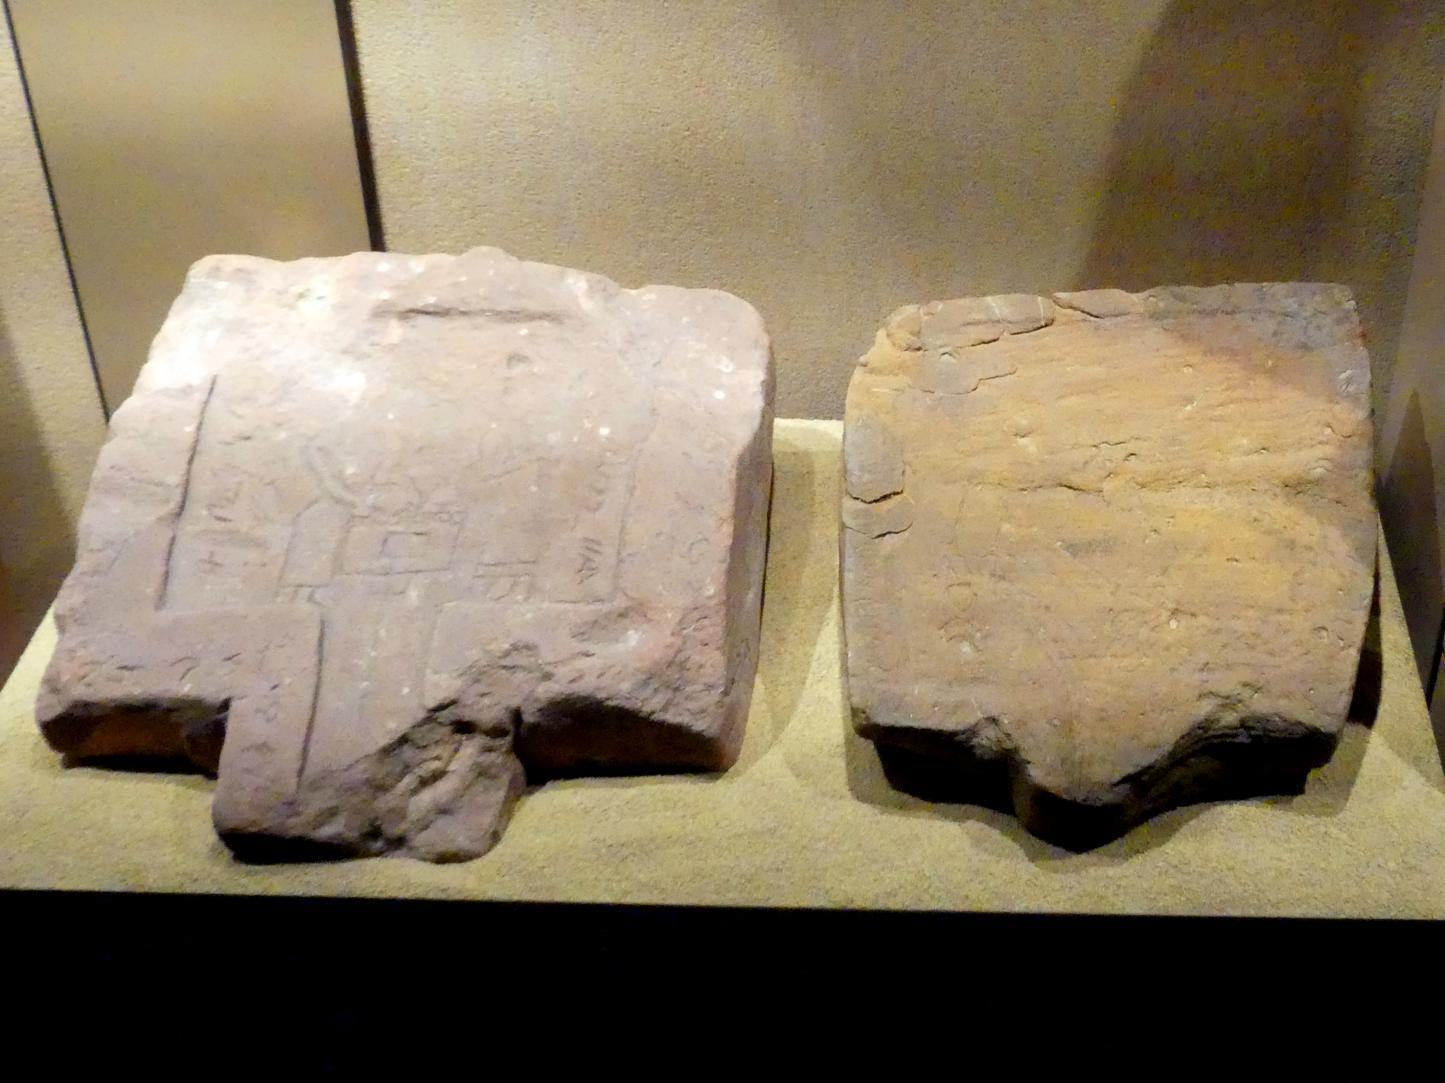 Zwei Opferplatten mit Opferszenen und Inschrift, Meroitische Zeit, 200 v. Chr. - 500 n. Chr., 1 - 100